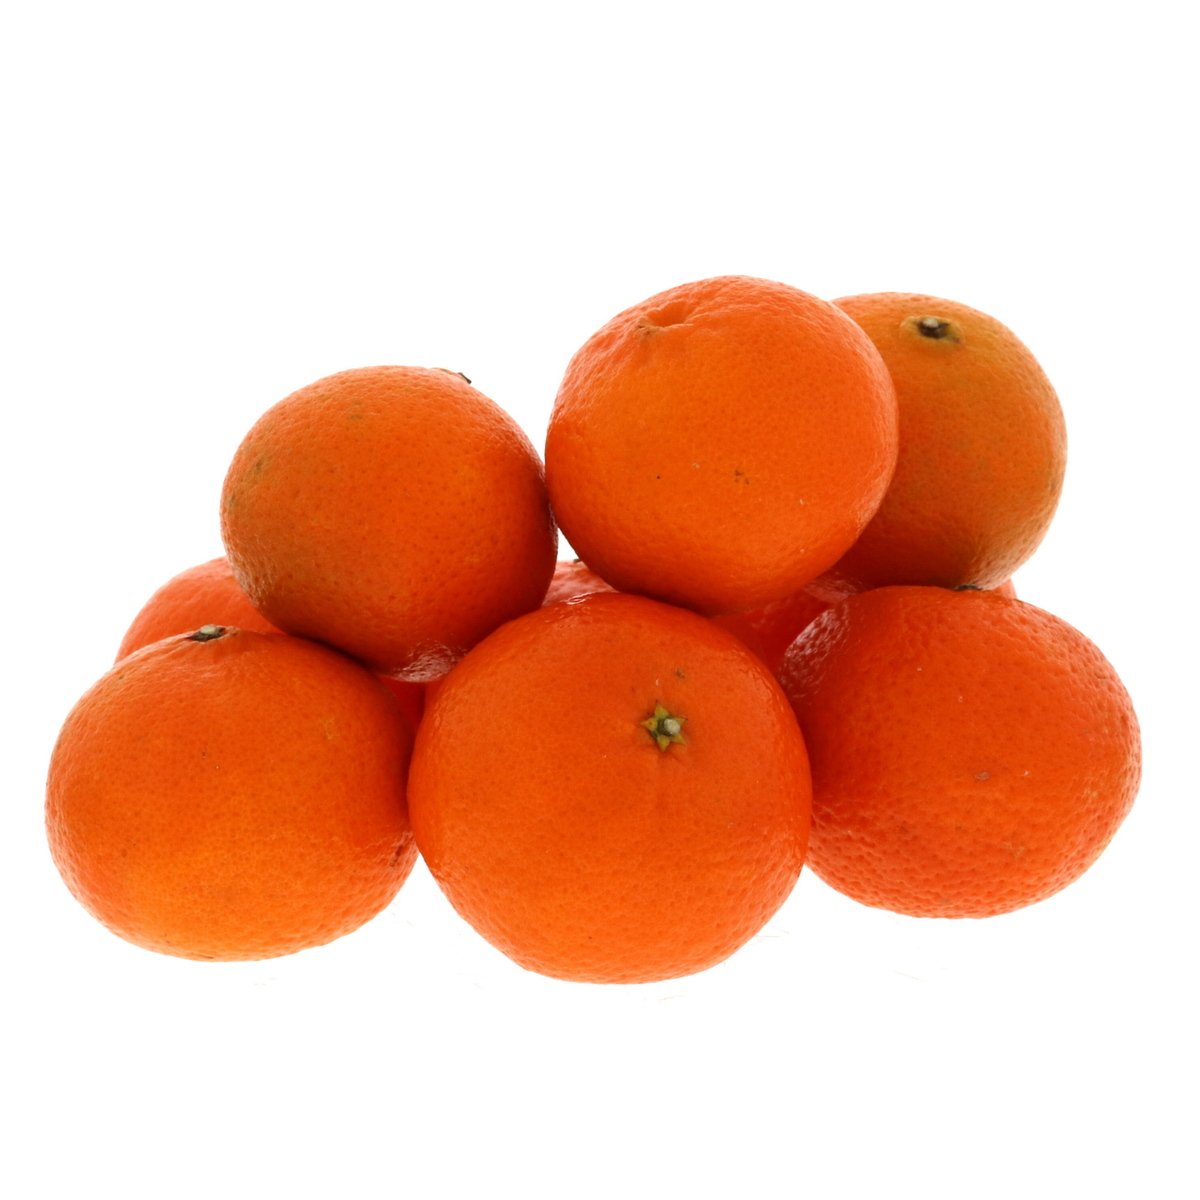 Buy Mandarin Turkey 1 kg Online at Best Price | Citrus Fruits | Lulu UAE in Saudi Arabia